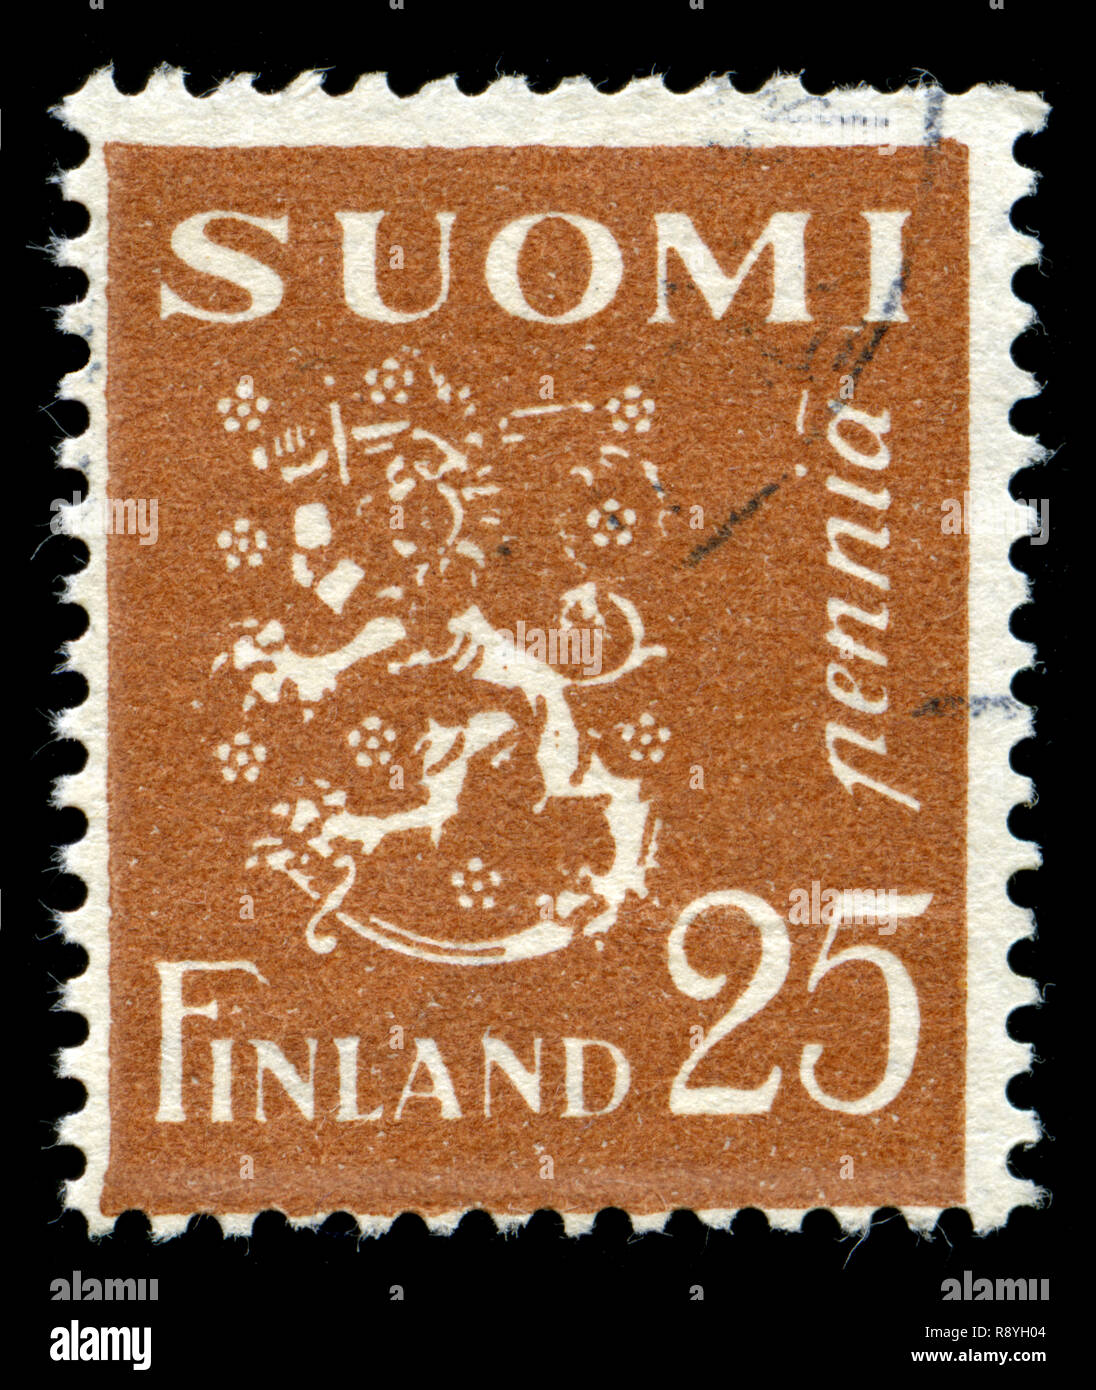 Timbre-poste de la Finlande dans le modèle 1930 Lion série émise en 1930 Banque D'Images